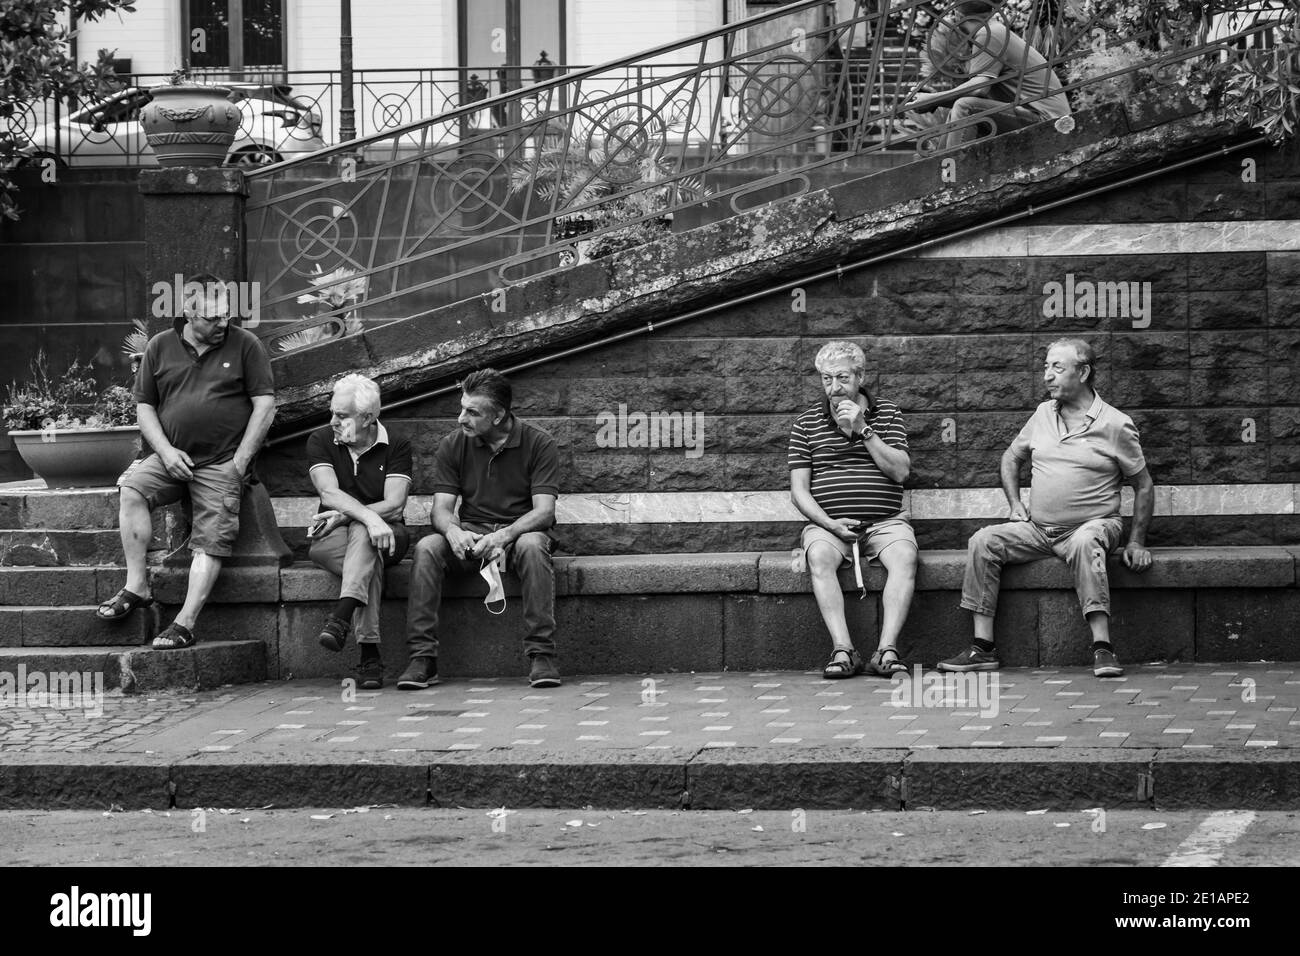 Zafferana etnea, Italia - 07 2020: Uomini che chiacchierano all'aperto con le maschere di tenuta Foto Stock